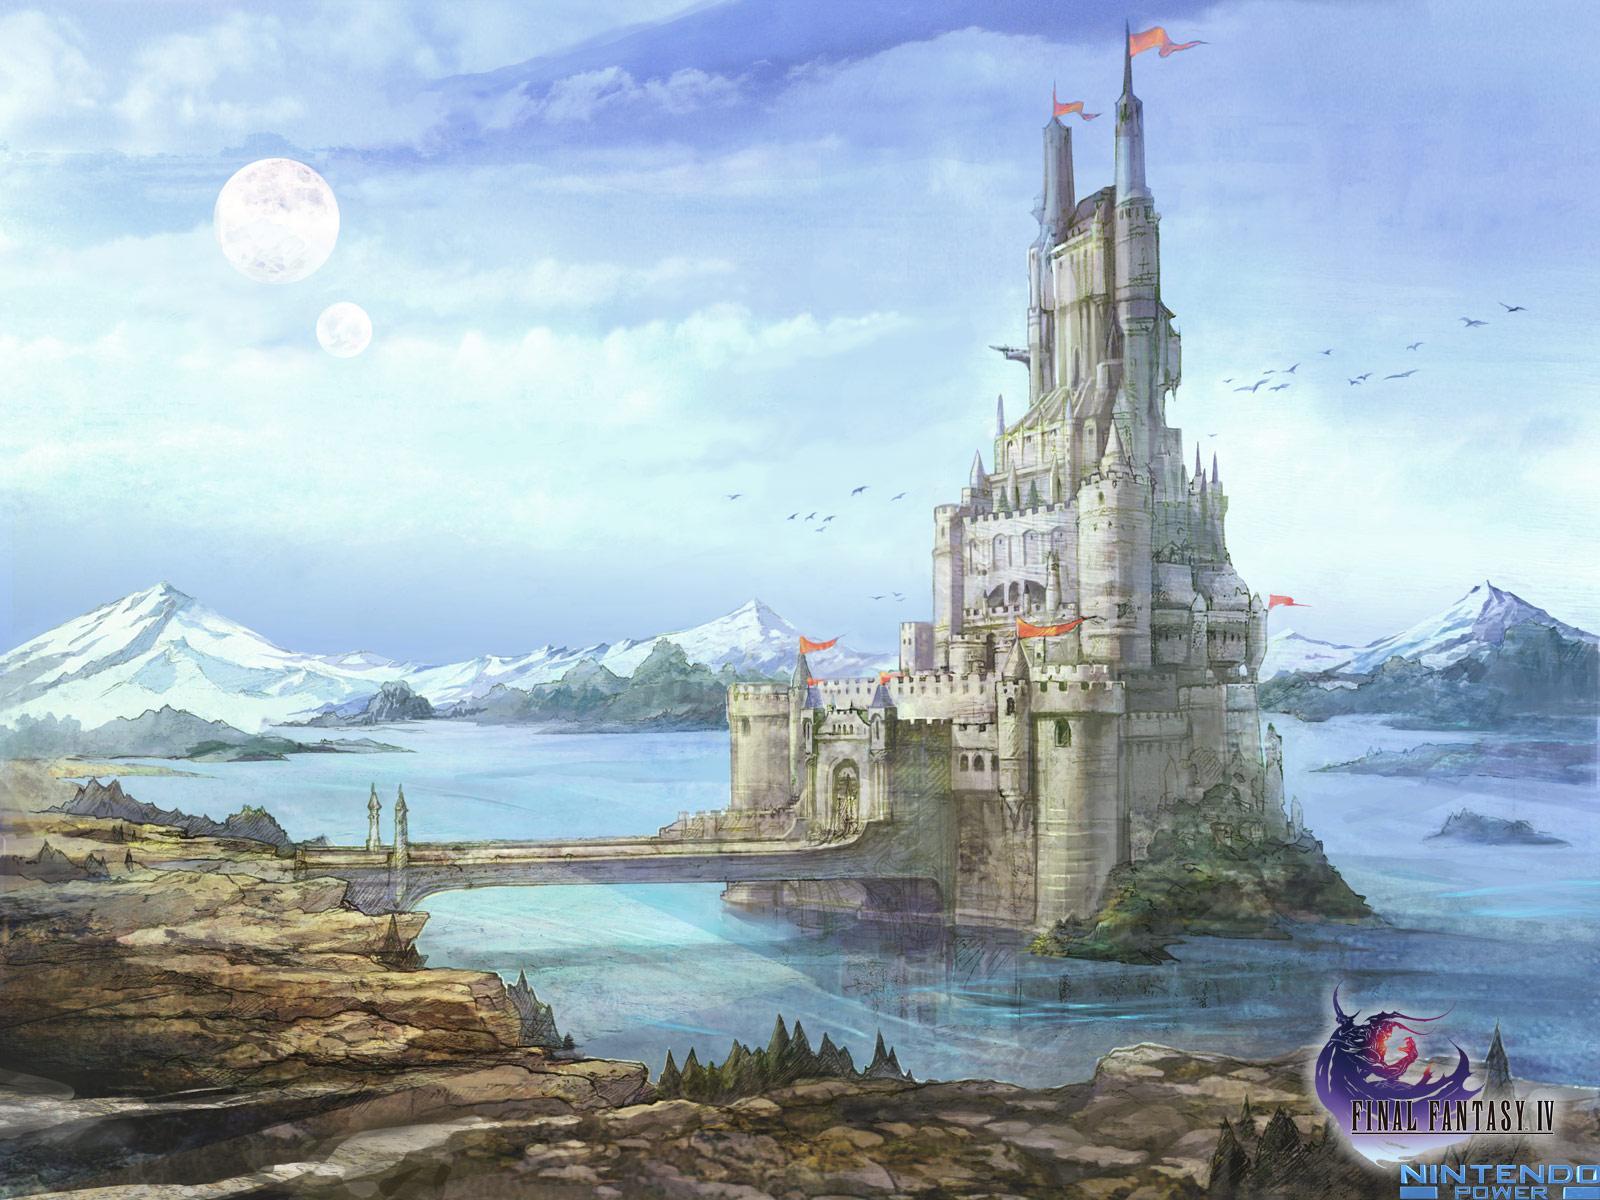 Wallpaper: Final Fantasy IV. Nintendo